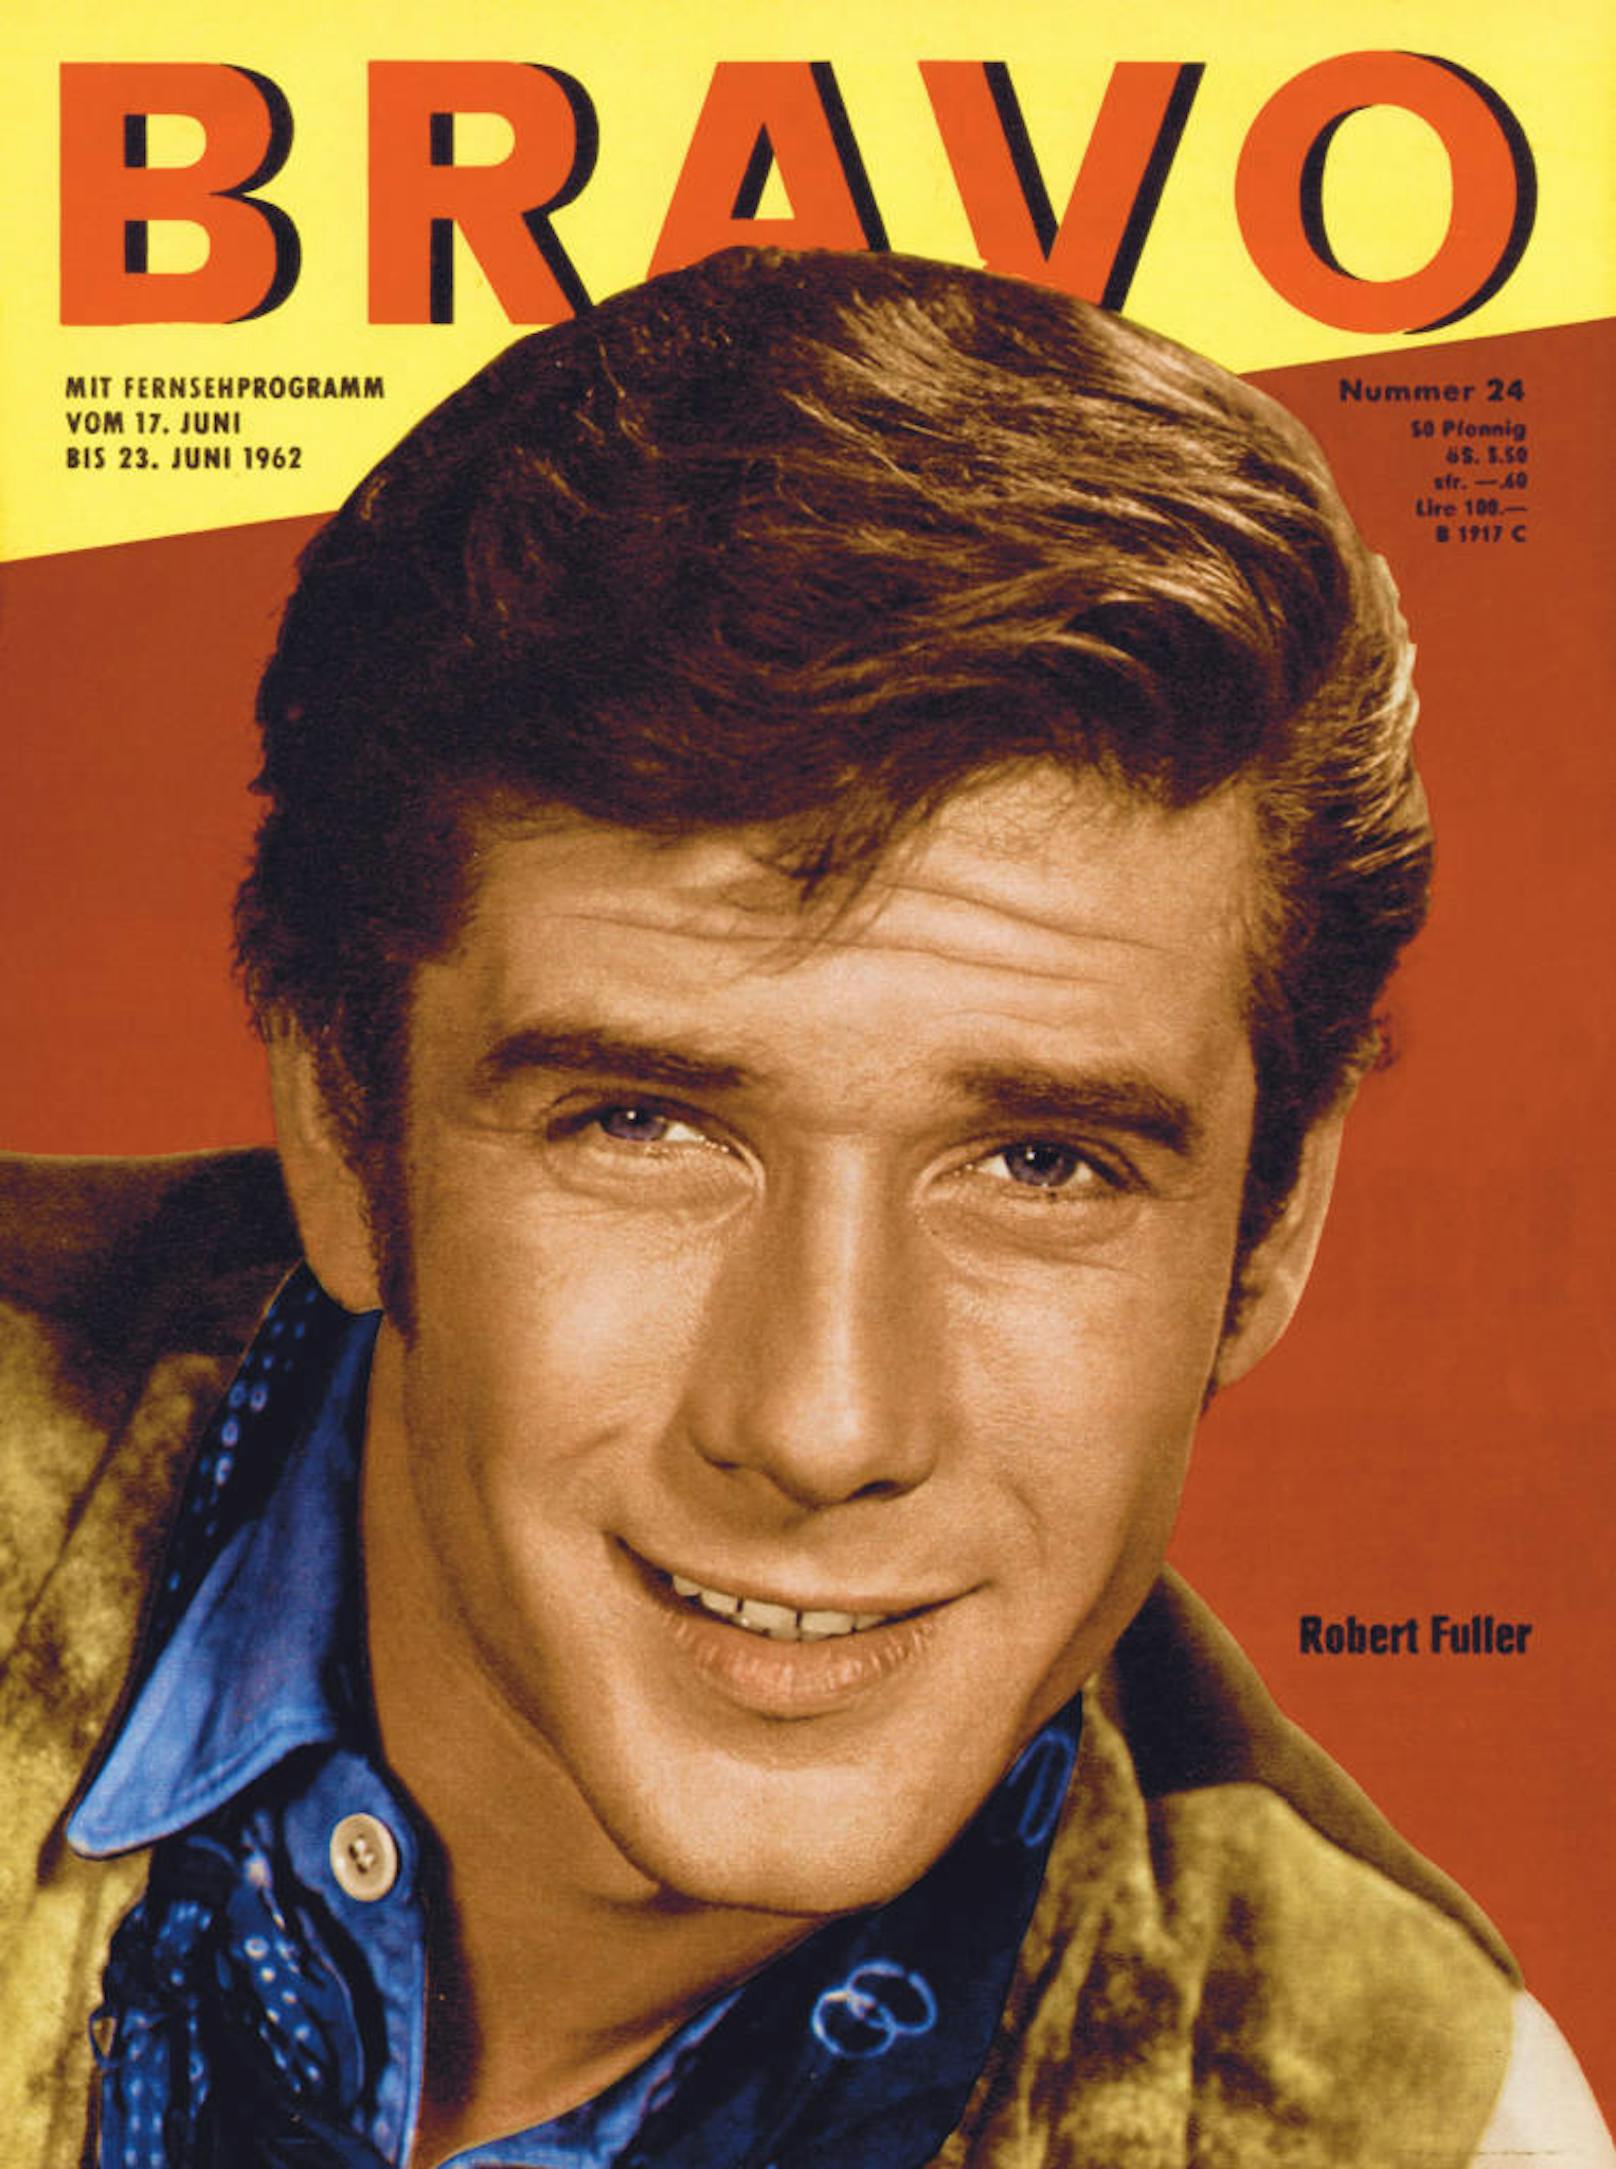 Die BRAVO veröffentlichte 1963 und 1969 jeweils einen Starschnitt mit Schauspieler Robert Fuller ("Am Fuß der blauen Berge").